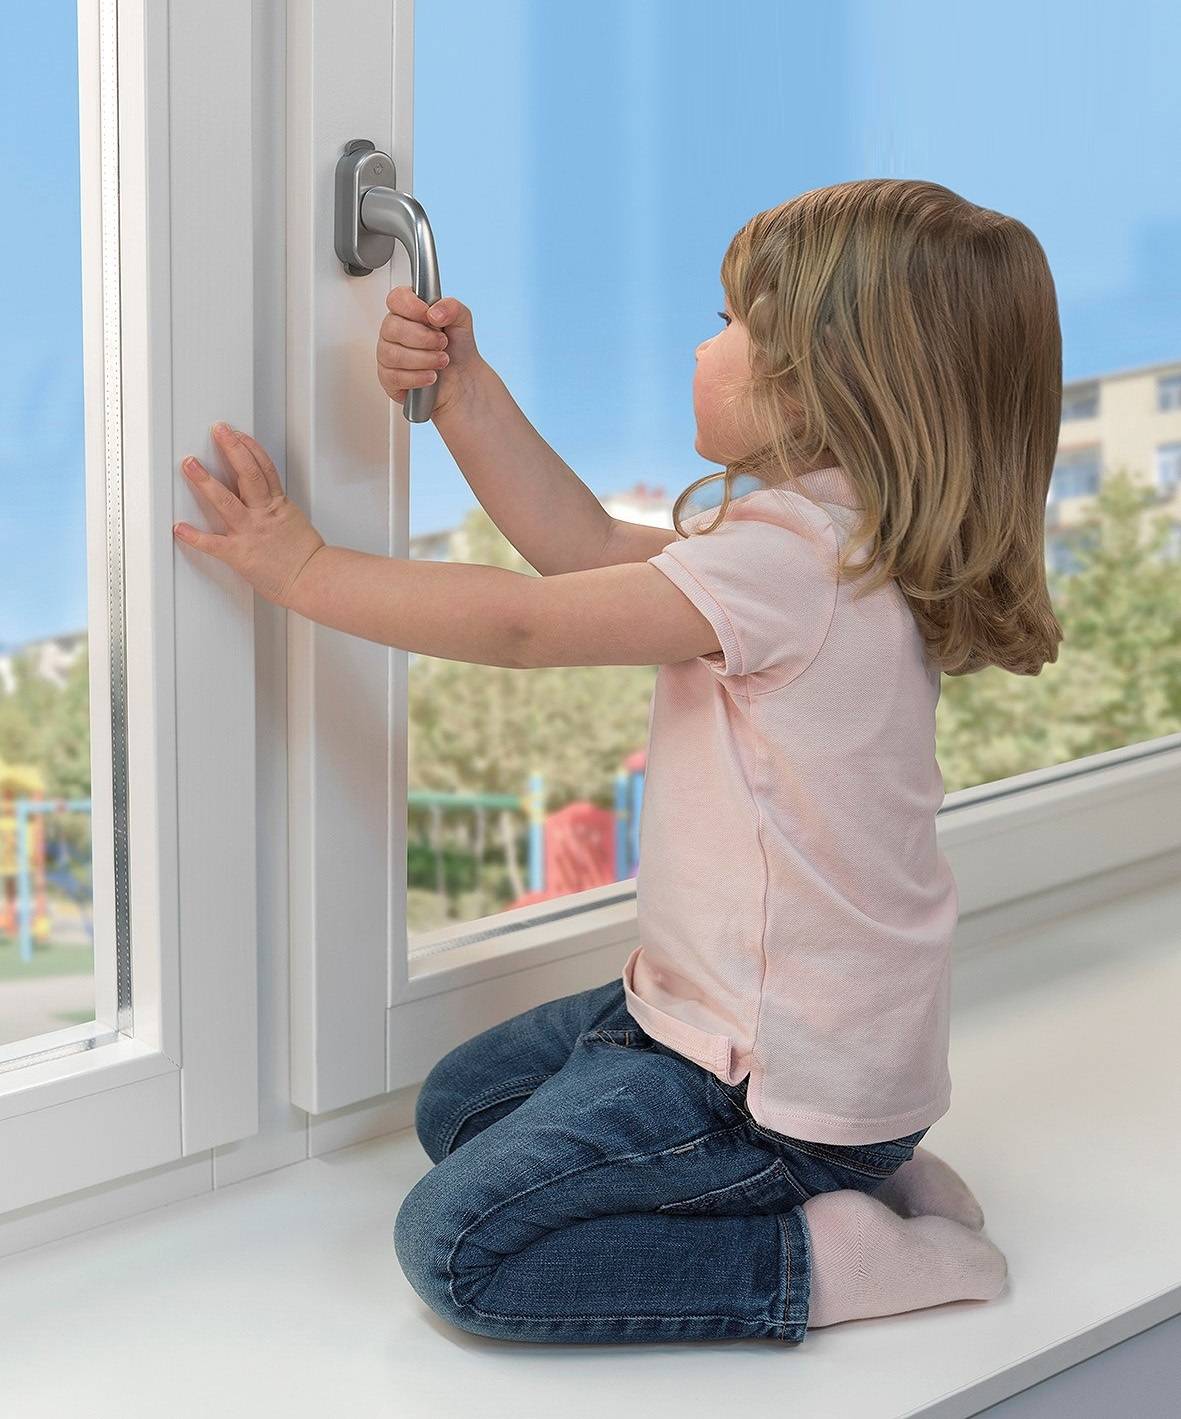 Защита от детей на окна, ограничители, фиксаторы, замки, заглушки, блокираторы для окон